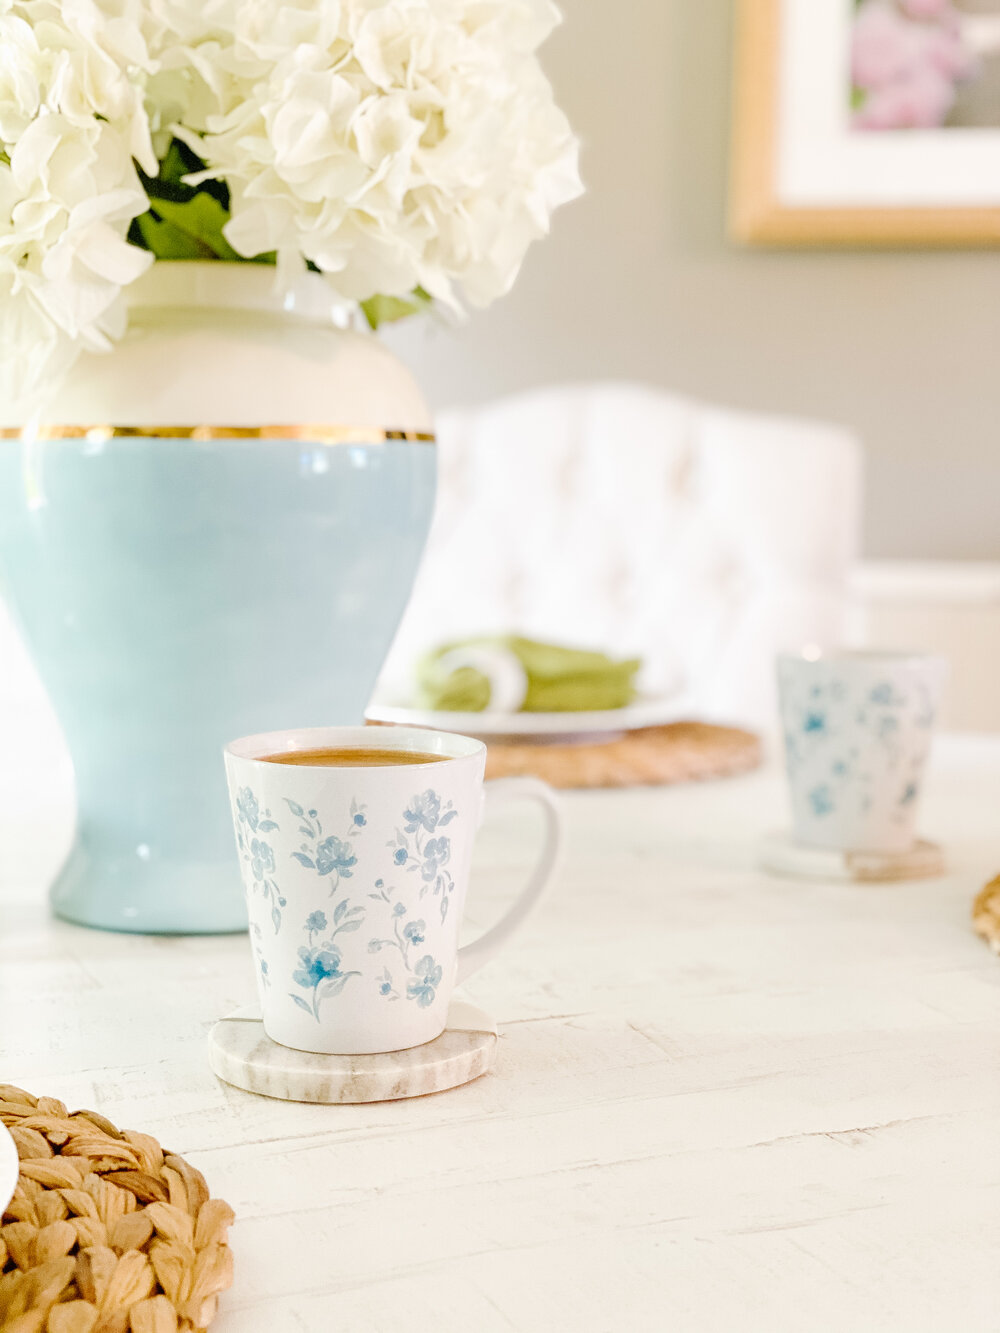 A TABLE Coffret Service à thé FLEURS Jolie Bleu 2 petits mugs en